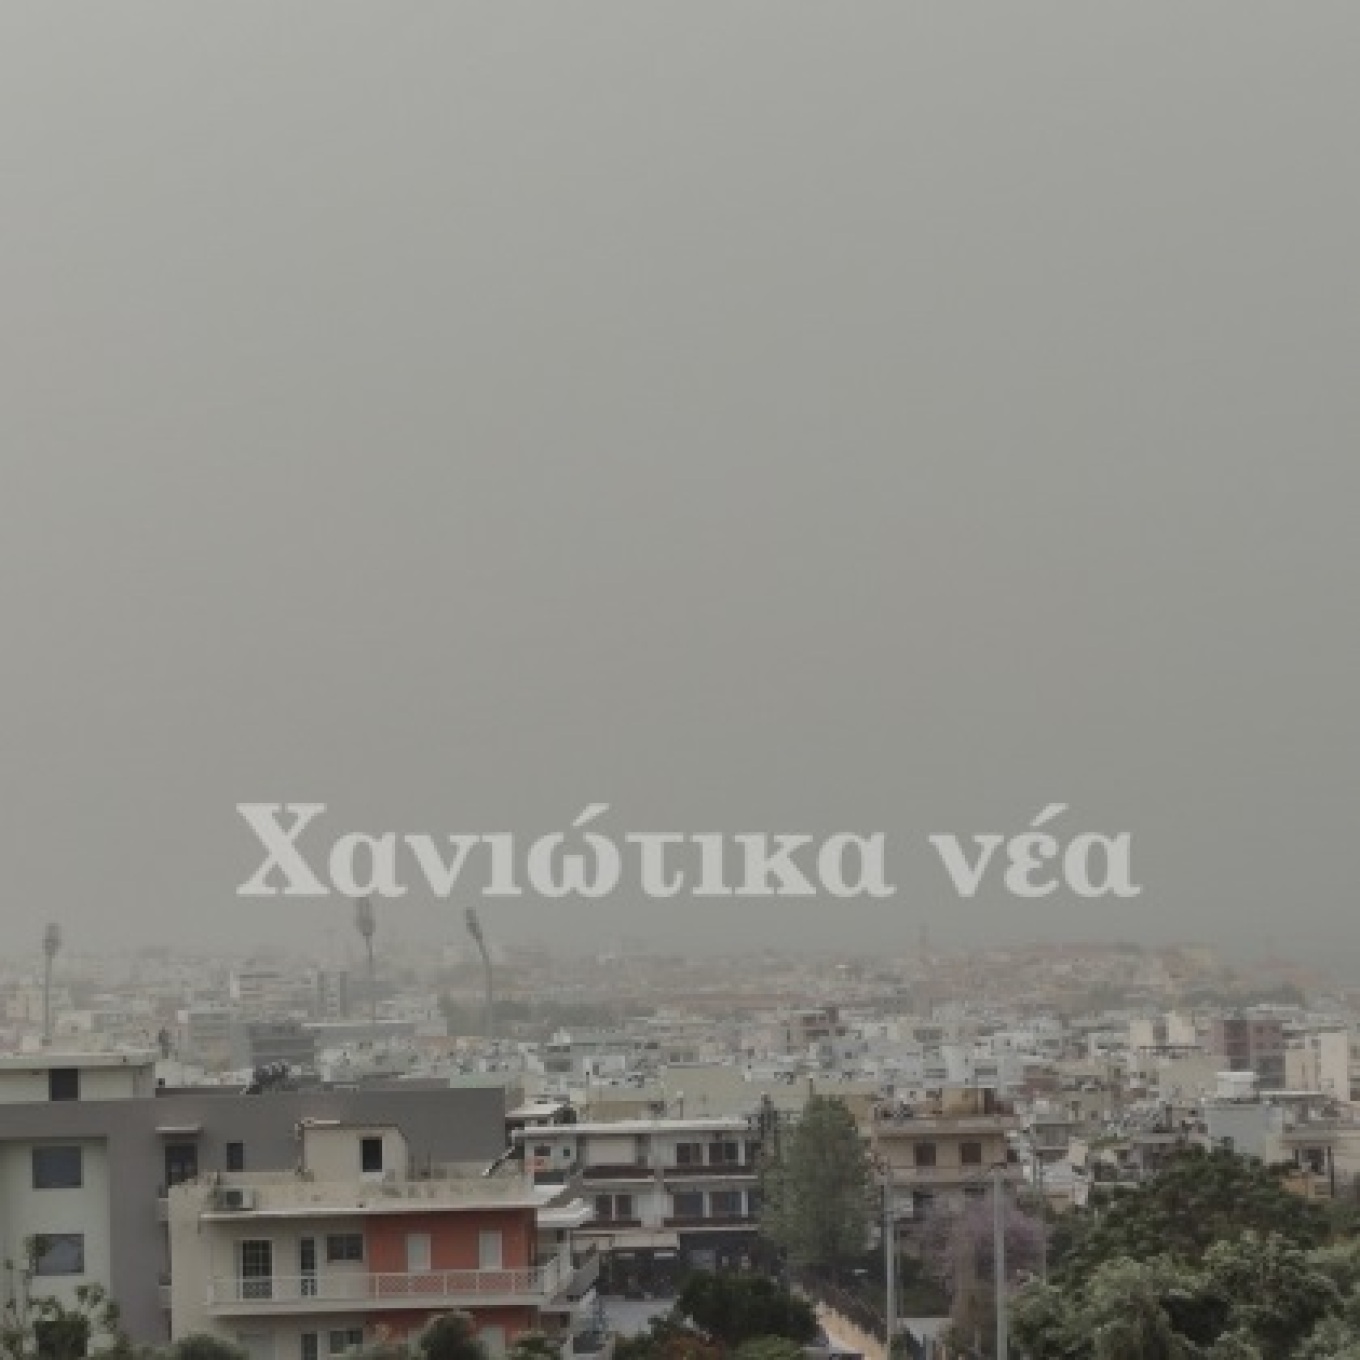 Τοπίο στην ομίχλη και στα Χανιά με την αφρικανική σκόνη να είναι έντονη και την ατμόσφαιρα αποπνικτική. Μάλιστα, σήμερα ο υδράργυρος στην πόλη ξεπέρασε τους 35 βαθμούς Κελσίου.  xania1 xania2 xania3   Συγκεντρώσεις ρεκόρ στην Κρήτη  Η Κρήτη και η Πελοπόννησος πλήττονται ιδιαίτερα από το κύμα μεταφοράς σκόνης από τη Σαχάρα, ενώ υψηλές είναι οι συγκεντρώσεις και στην Αττική, όπως είπε στο protothema.gr ο διευθυντής Ερευνών του Αστεροσκοπείου της Αθήνας, Κώστας Λαγουβάρδος. Είναι χαρακτηριστικό για την κατάστα